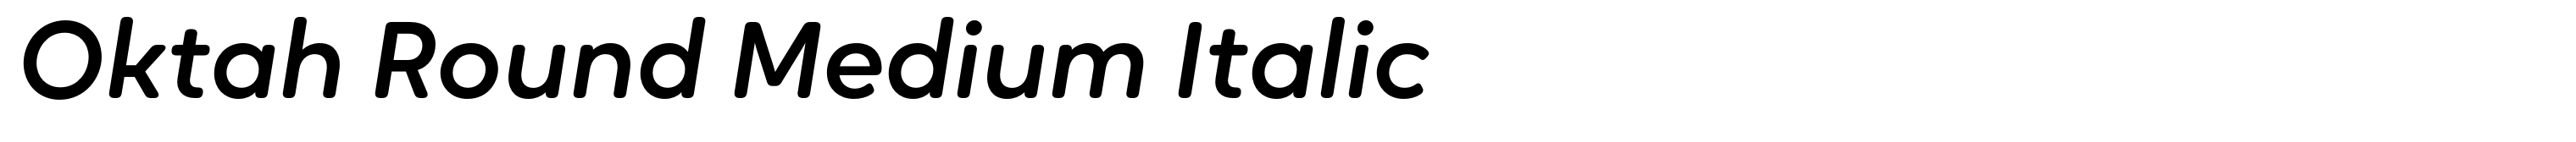 Oktah Round Medium Italic